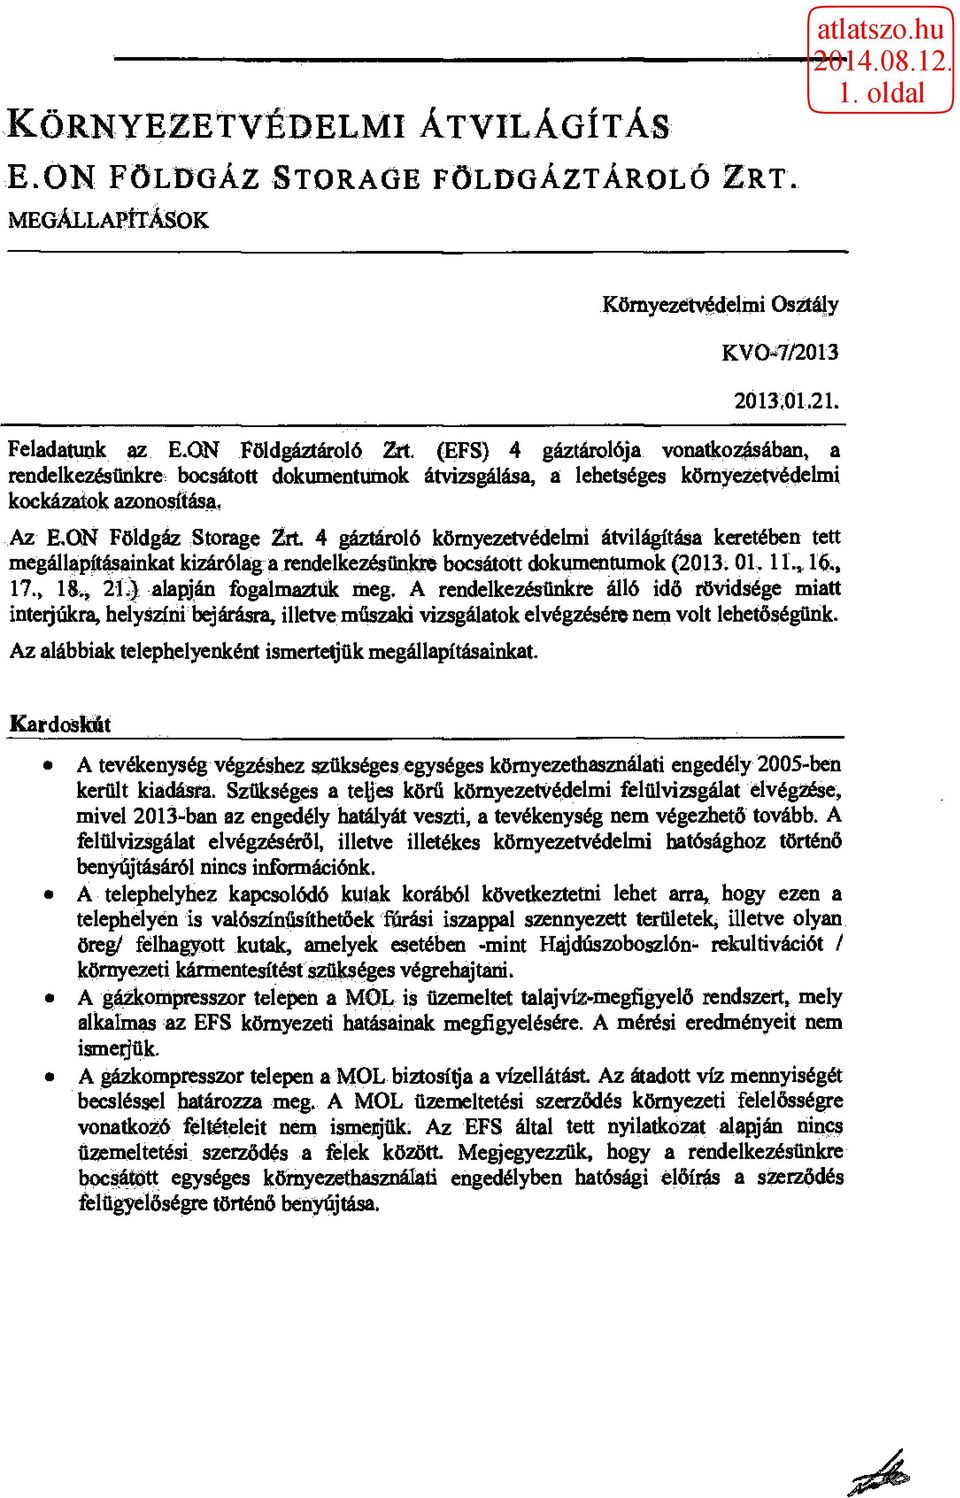 Az EON Földgáz Storage Zrt 4 gáztároló környezetvédelmi átvilágítása keretében tett megállapításainkat kizárólag a rendelkezésünkre bocsátott dokumentumok (2013.01.1116., 17.